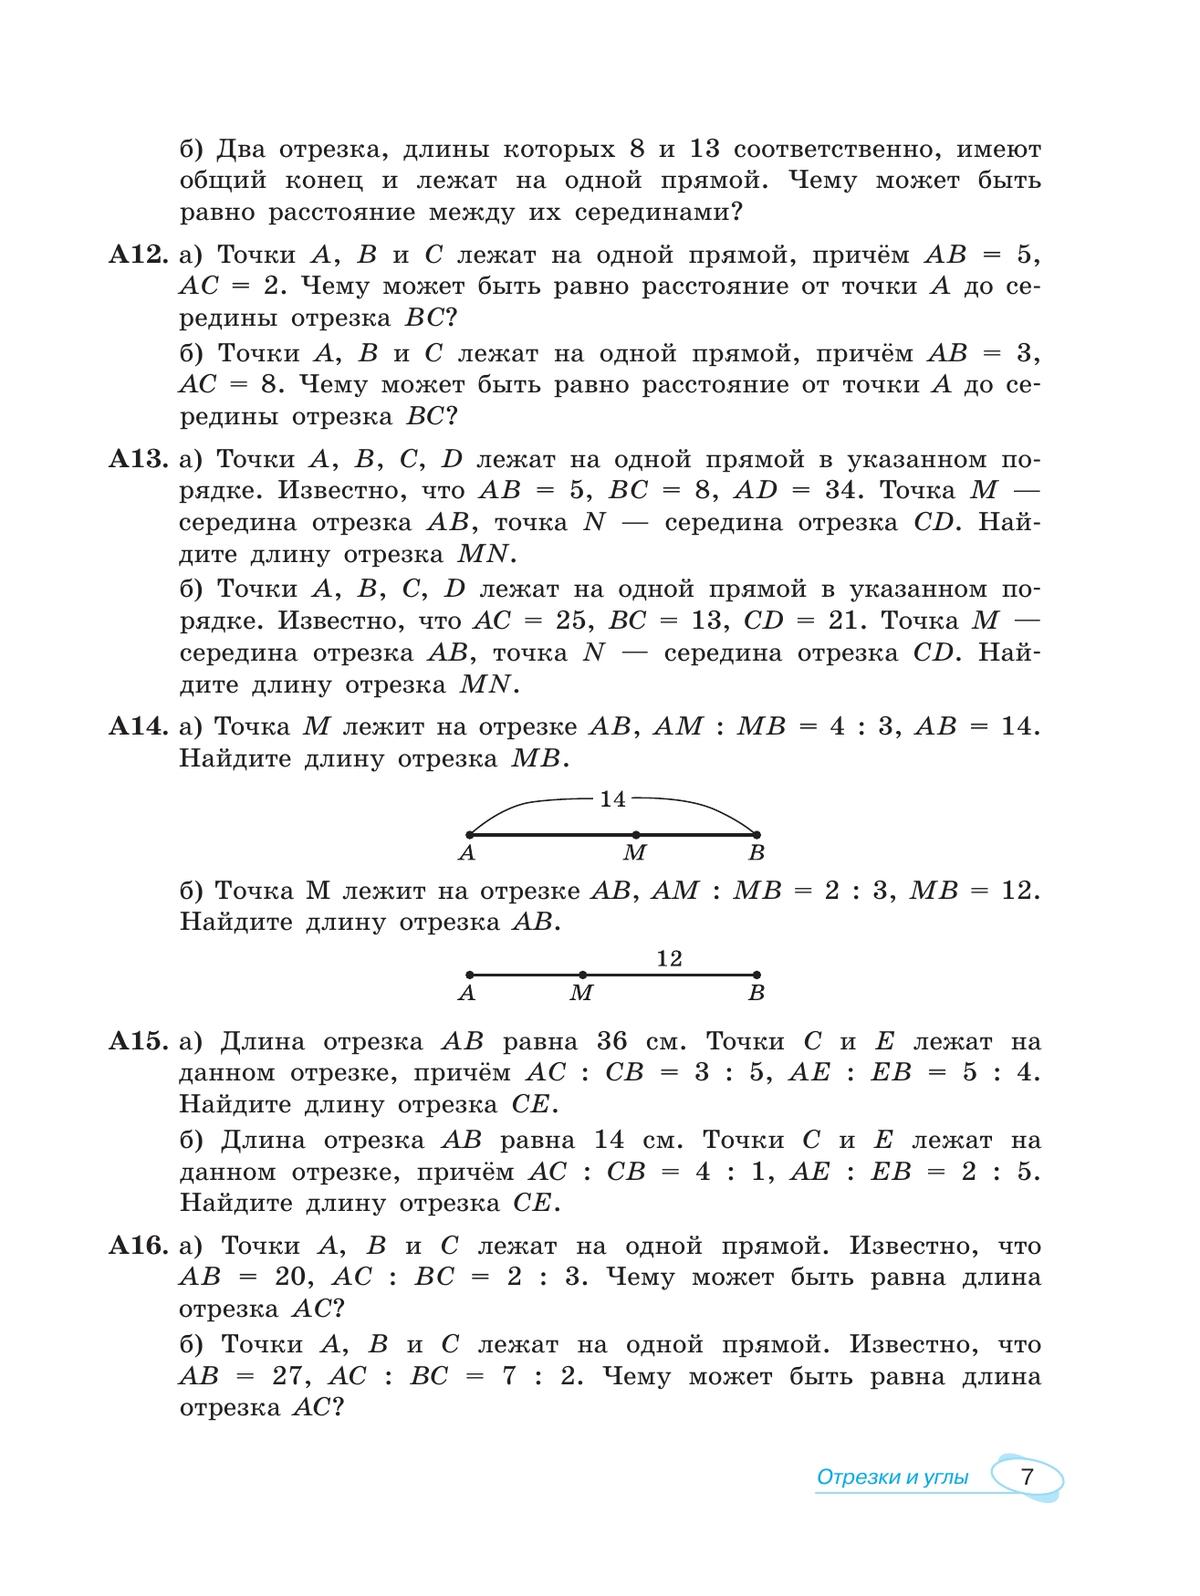 Математика. Универсальный многоуровневый сборник задач. 7-9 класс. В 3 частях. Ч.2. Геометрия 6